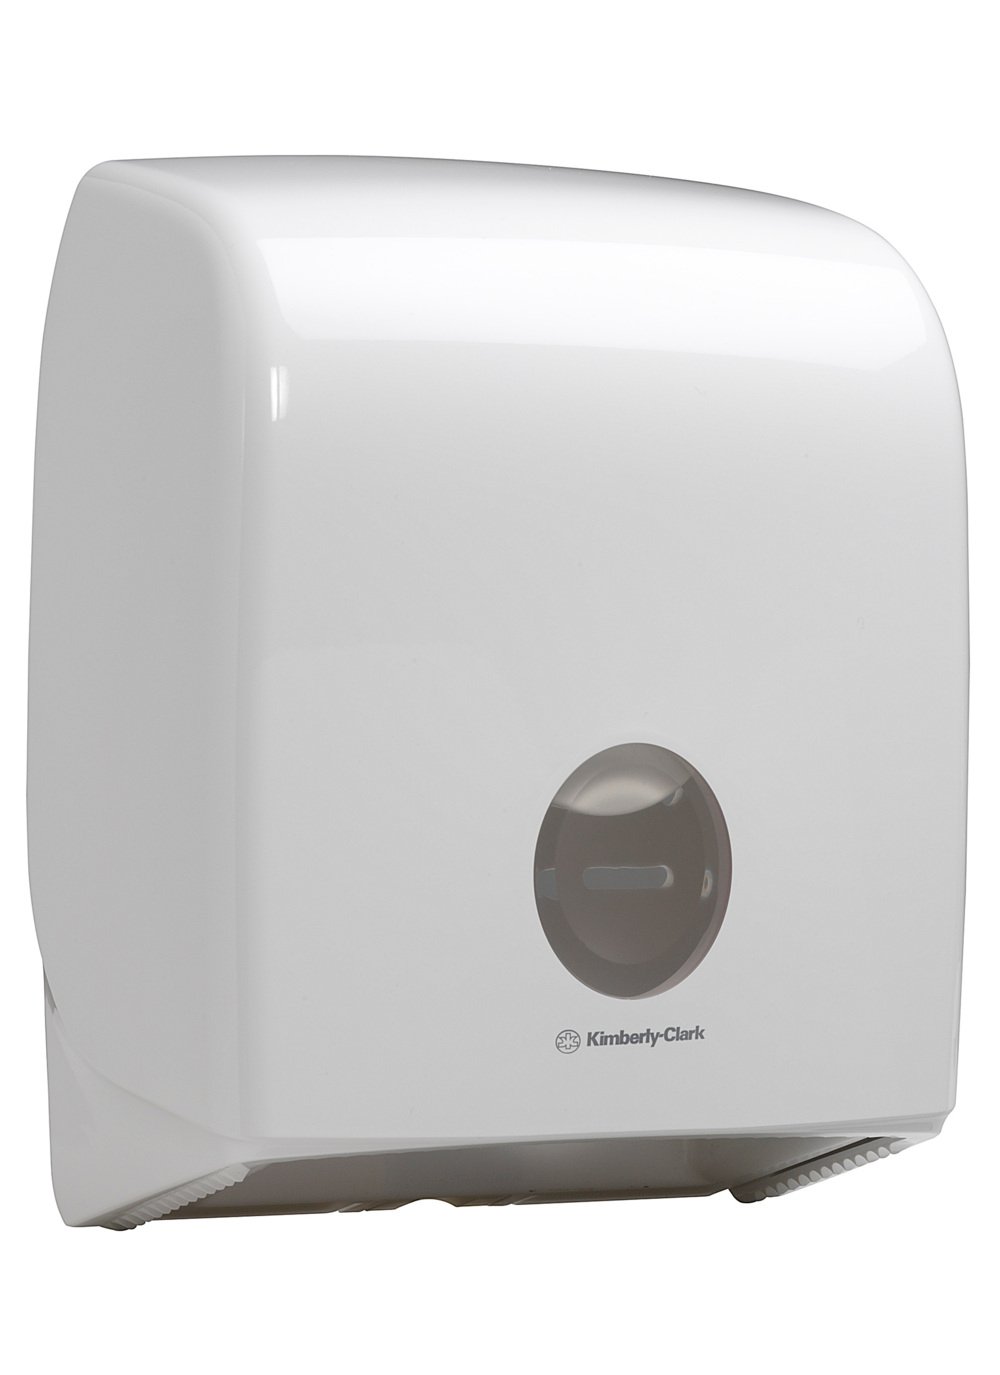 Distributeur de papier toilette simple rouleau Mini Jumbo Aquarius™ 6958 - Blanc - 6958